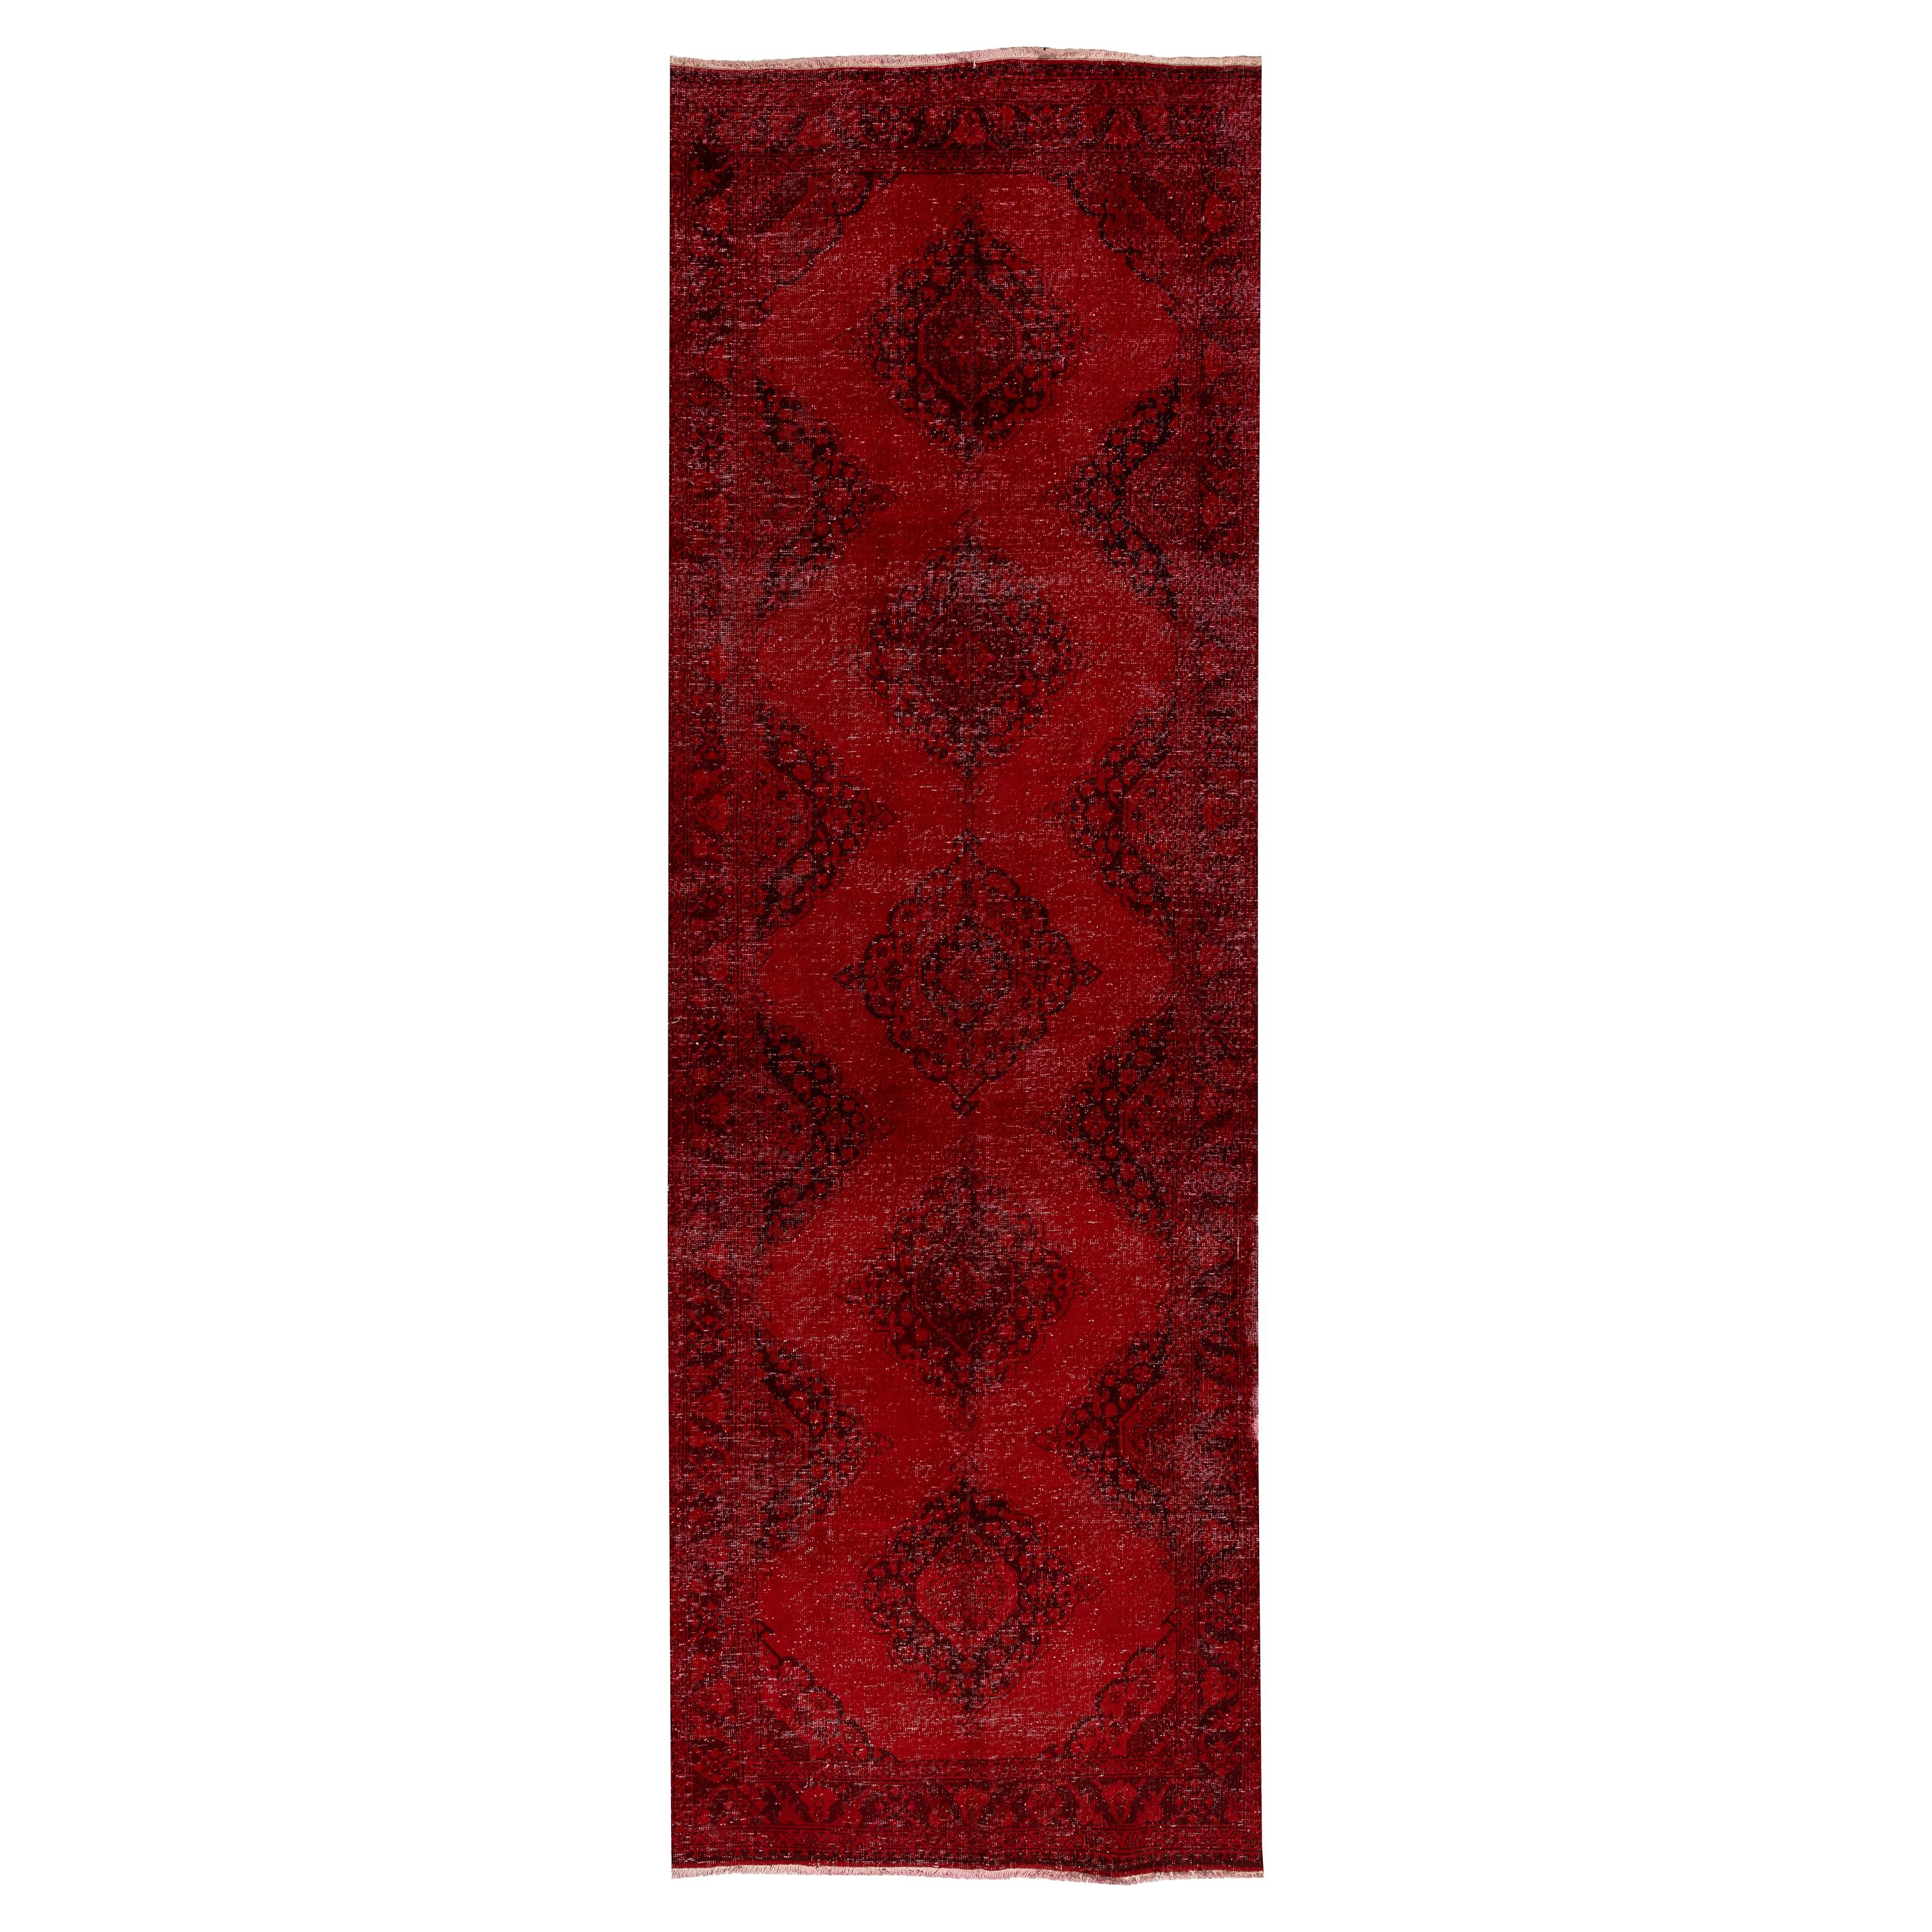 4.3x13.5 Ft Handmade Anatolian Runner Rug. Modern Burgundy Red Corridor Carpet For Sale